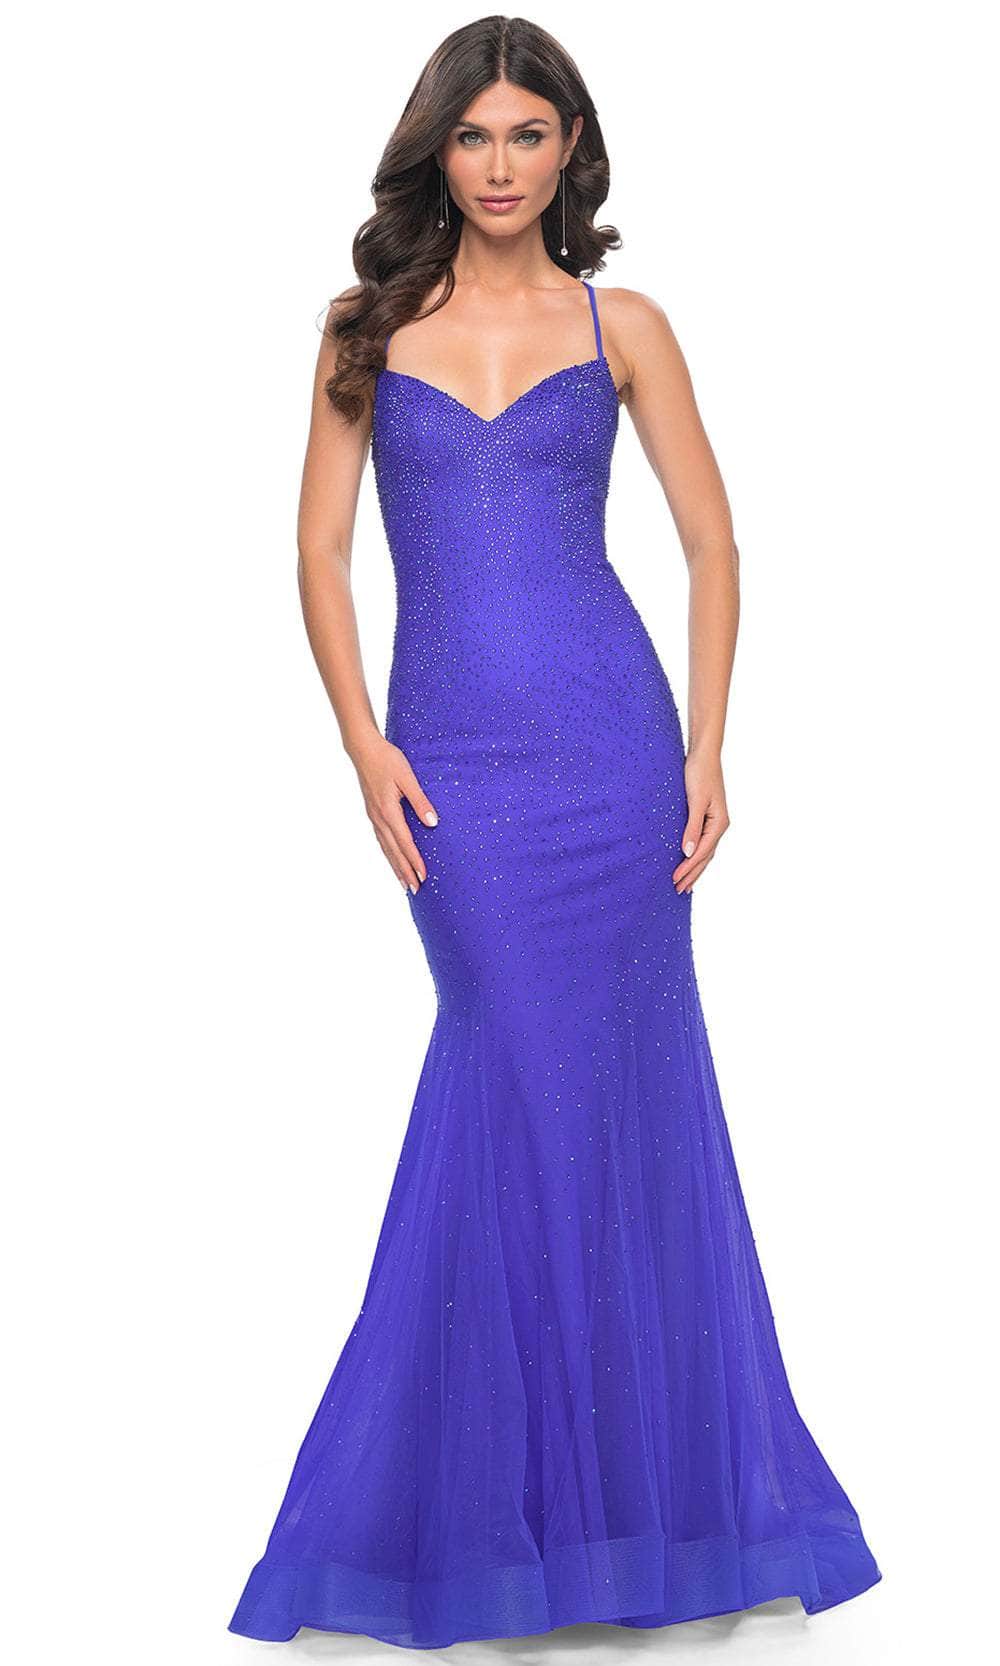 La Femme 32273 - Embellished V-Neck Prom Dress
